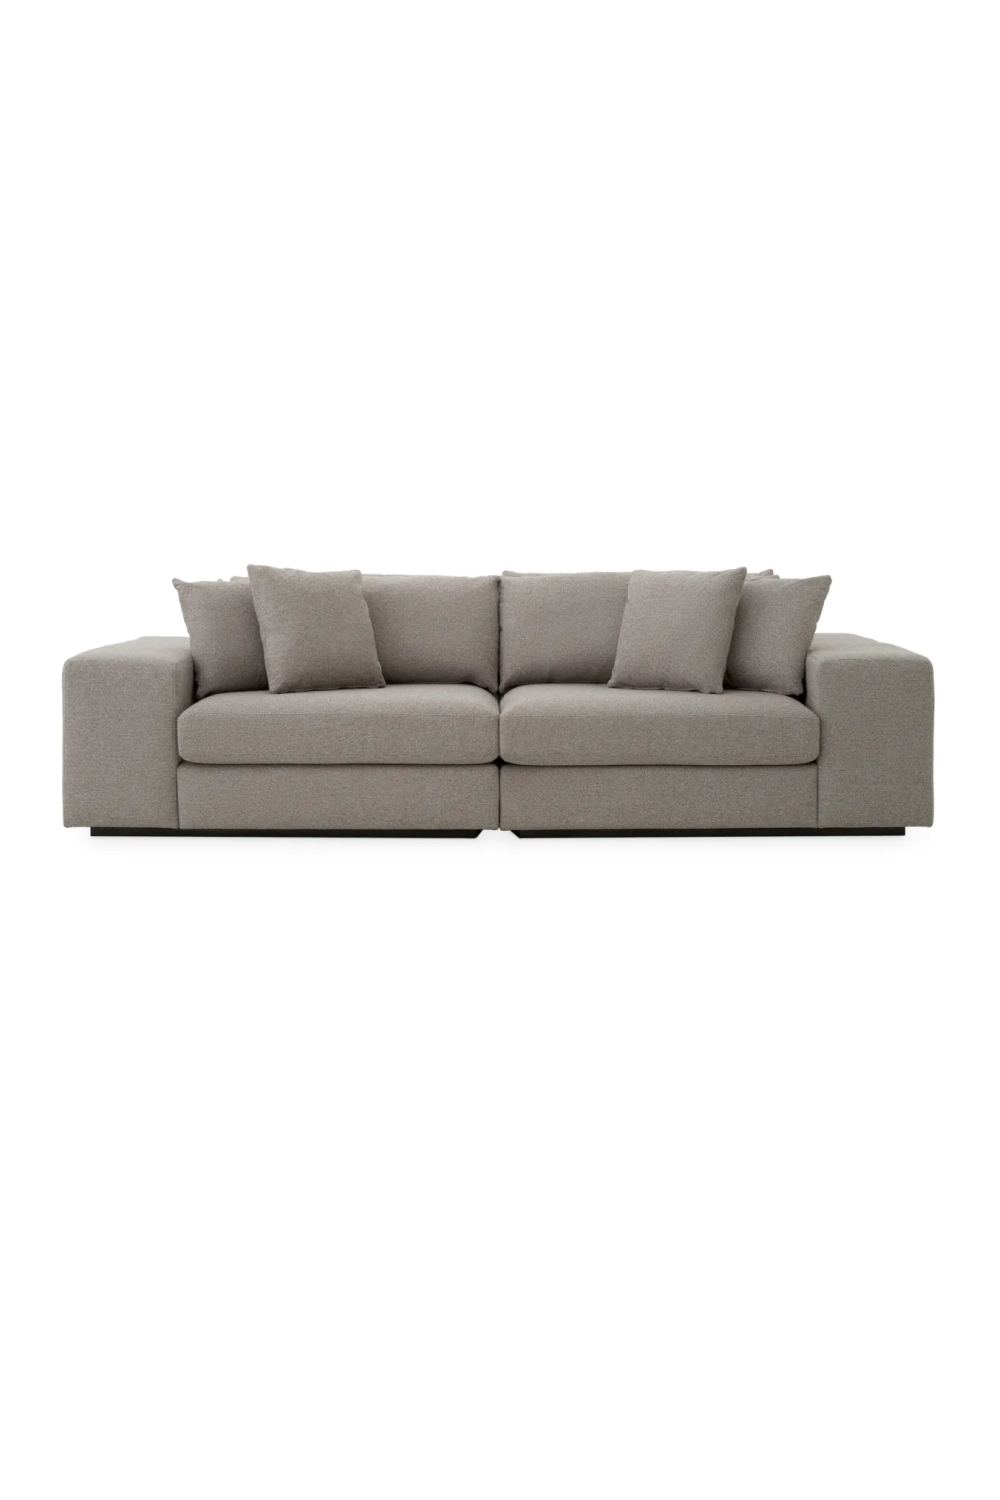 Gray Fabric Sofa | Eichholtz Vista Grande | Oroa.com